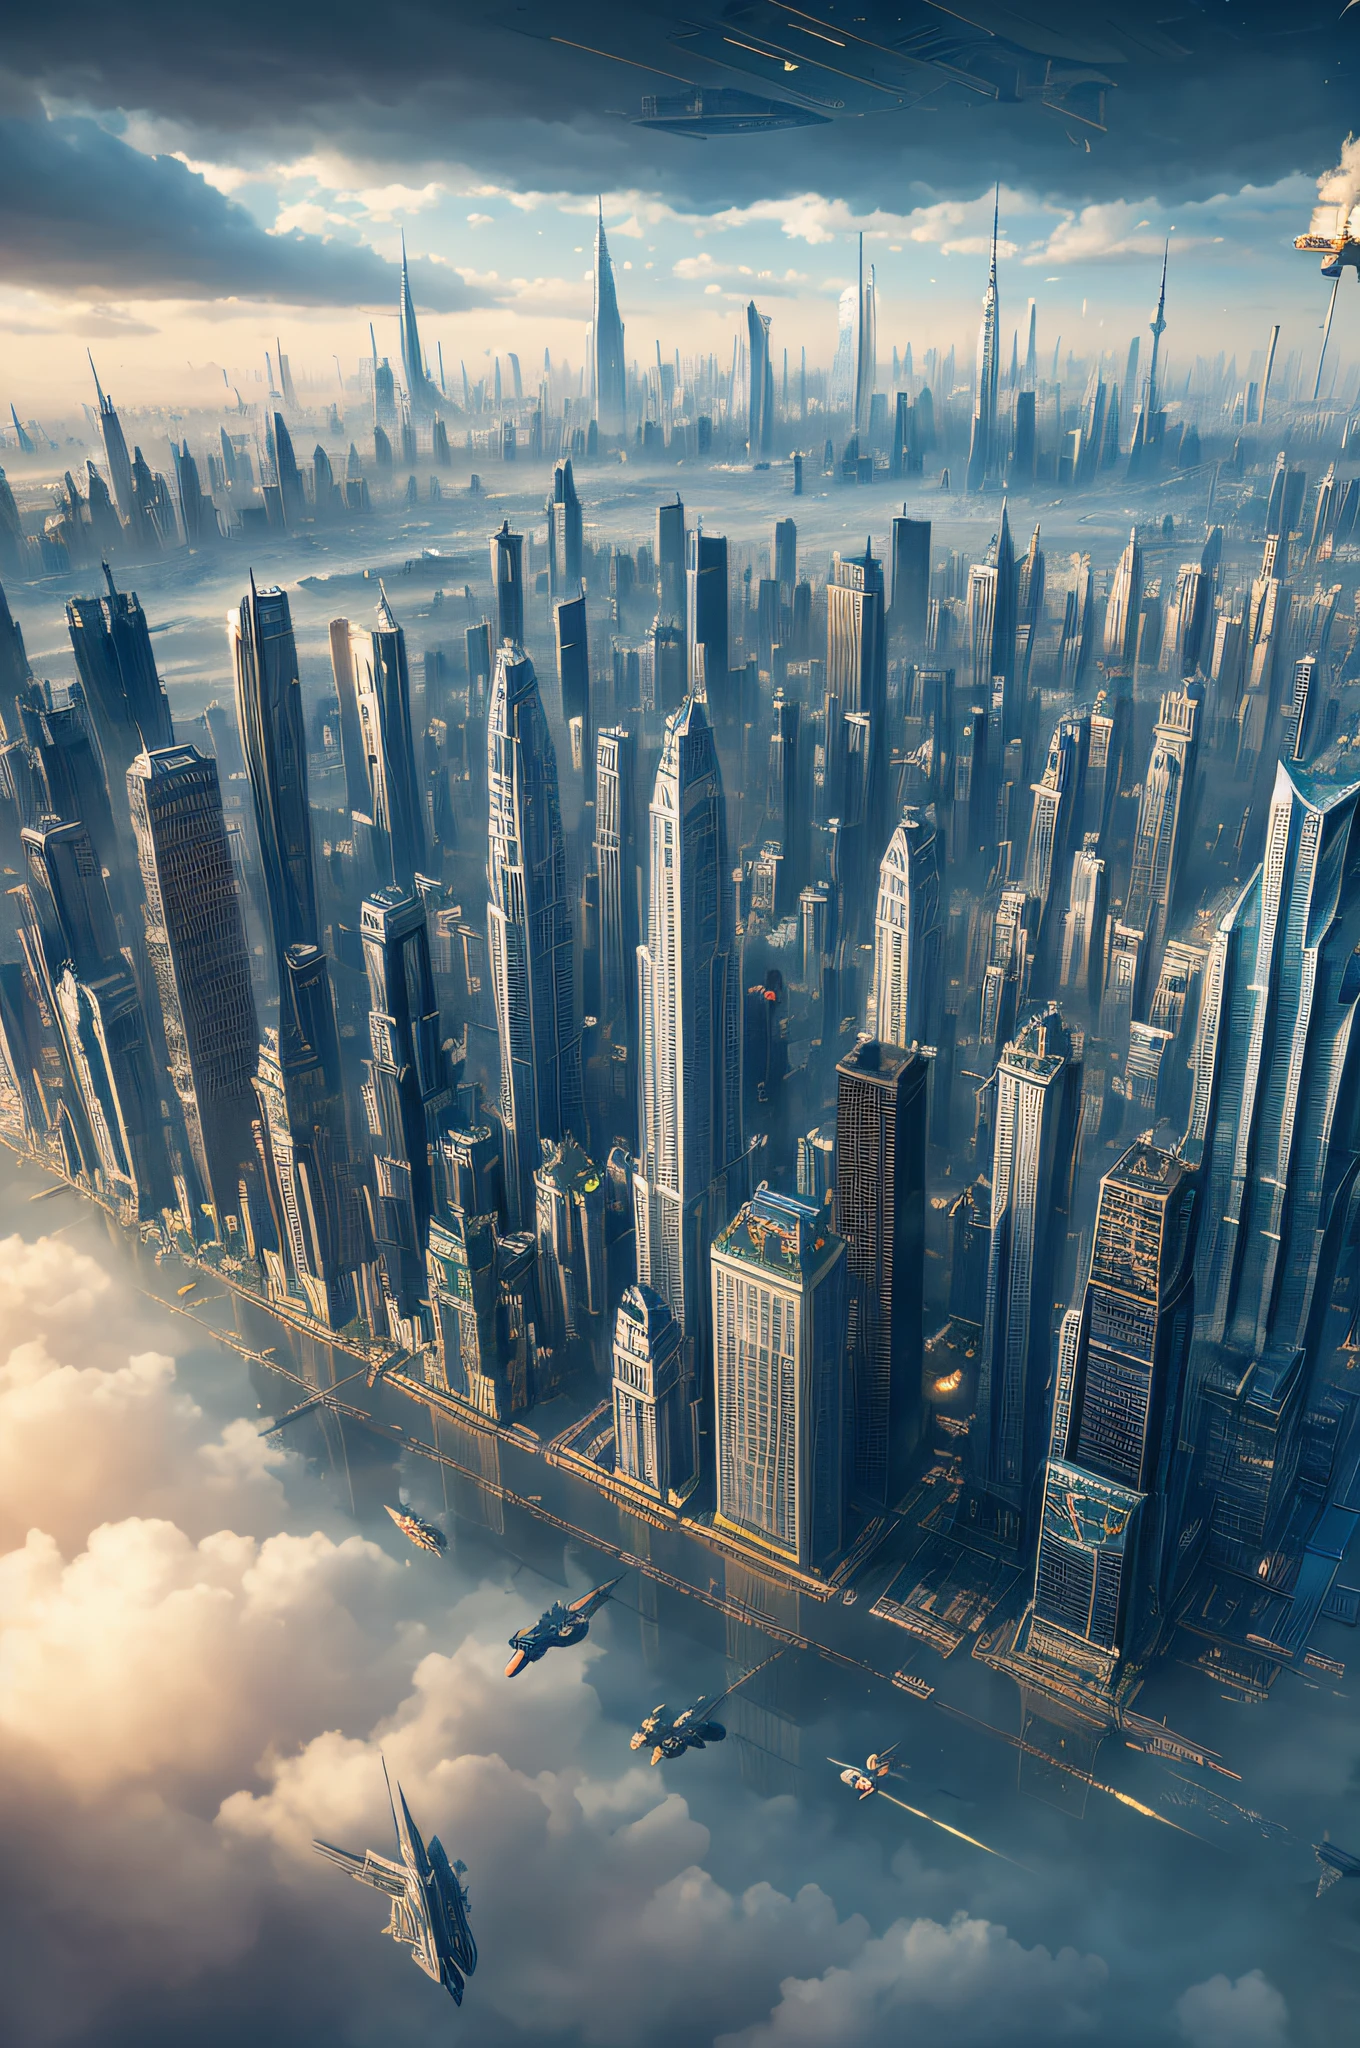 "漂浮的城市": 云端上的新世纪大都市, 摩天大楼, 错综复杂的桥梁, 以及在建筑物之间滑行的飞艇, 超现实主义, 彩色实地印刷, 高细节, 超高清, 8千, 解剖学上正确, 电影灯光 4D 品质